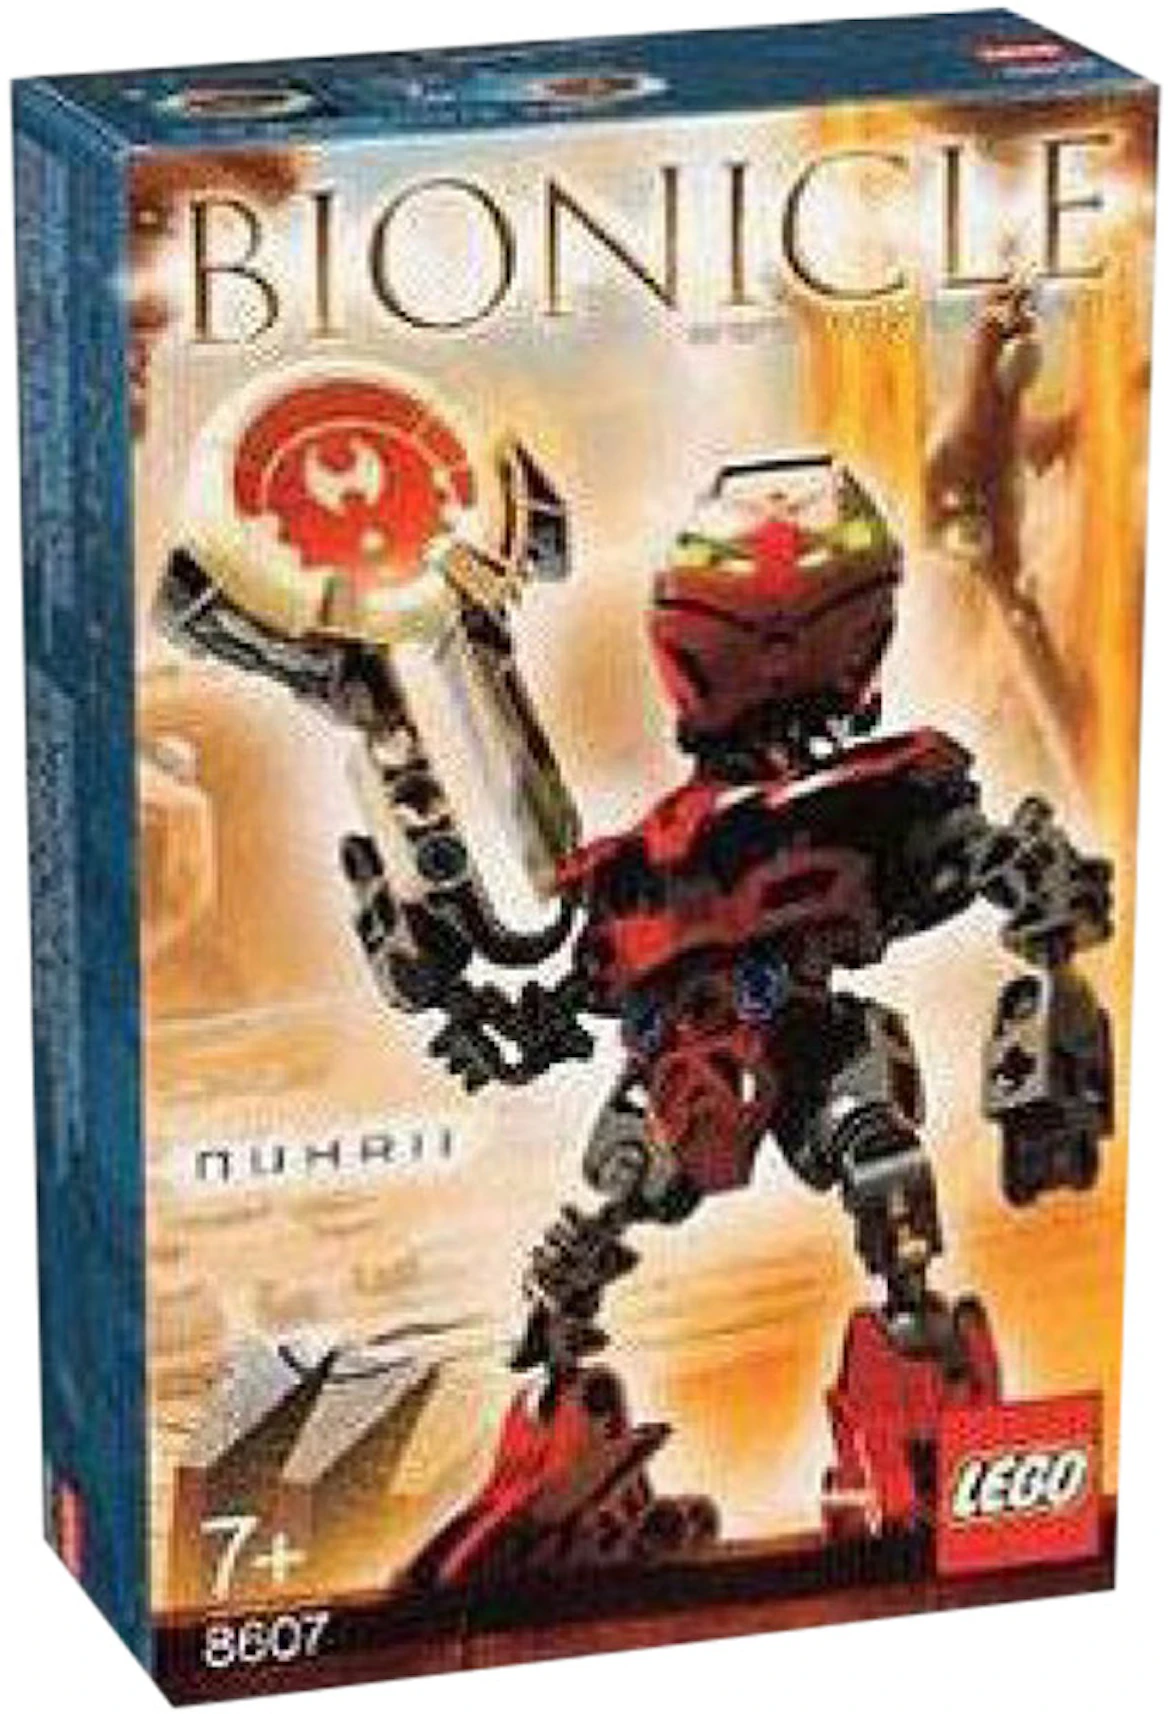 LEGO Bionicle Nuhrii Set 8607 - JP